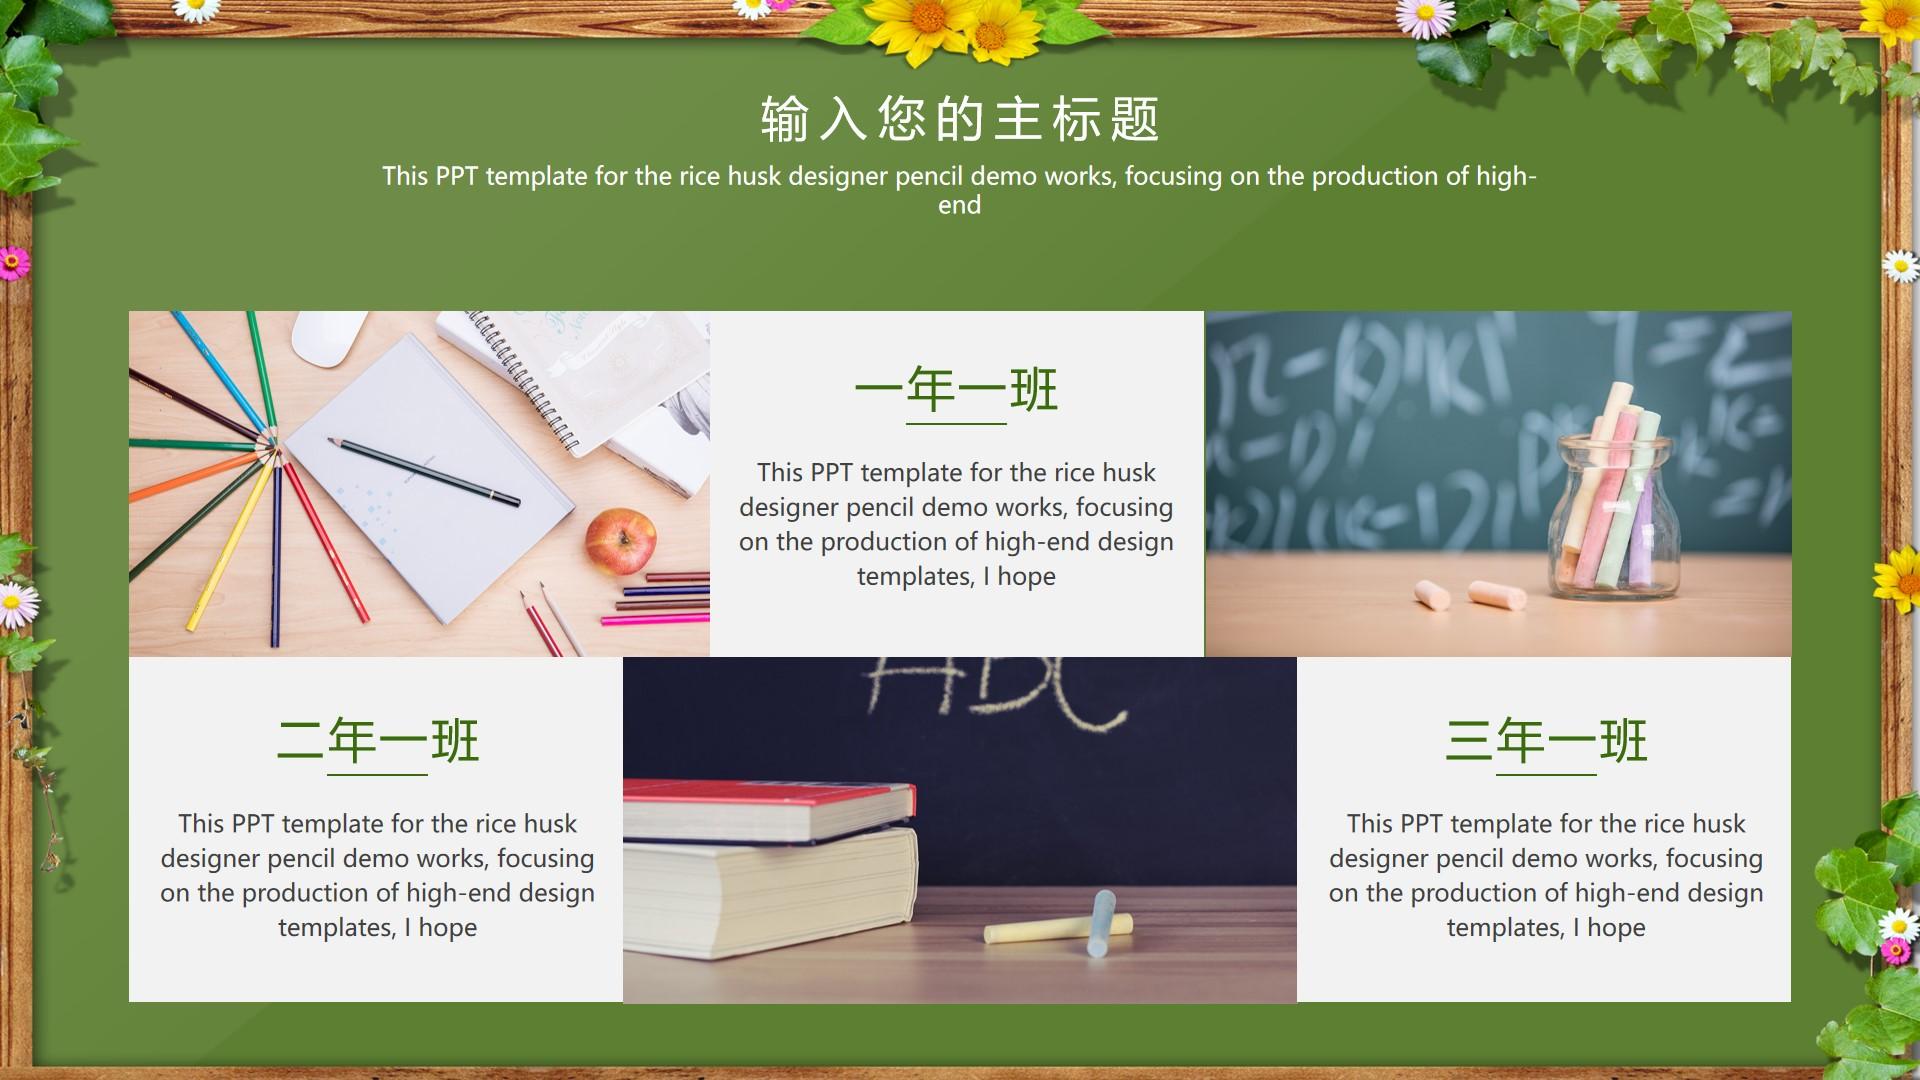 教育教学绿色黄色卡通husk designer rice pencil 云素材PPT模板1672656593574